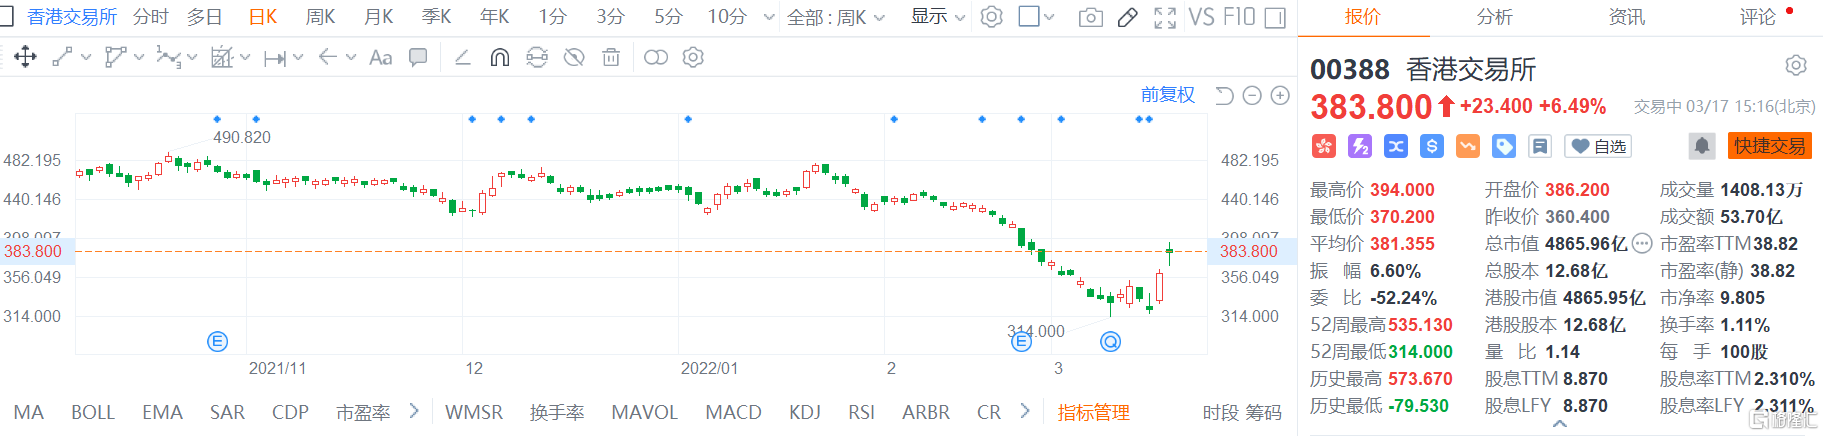 港交所(0388.HK)今日再度走强 现报383.8港元涨幅6.5%